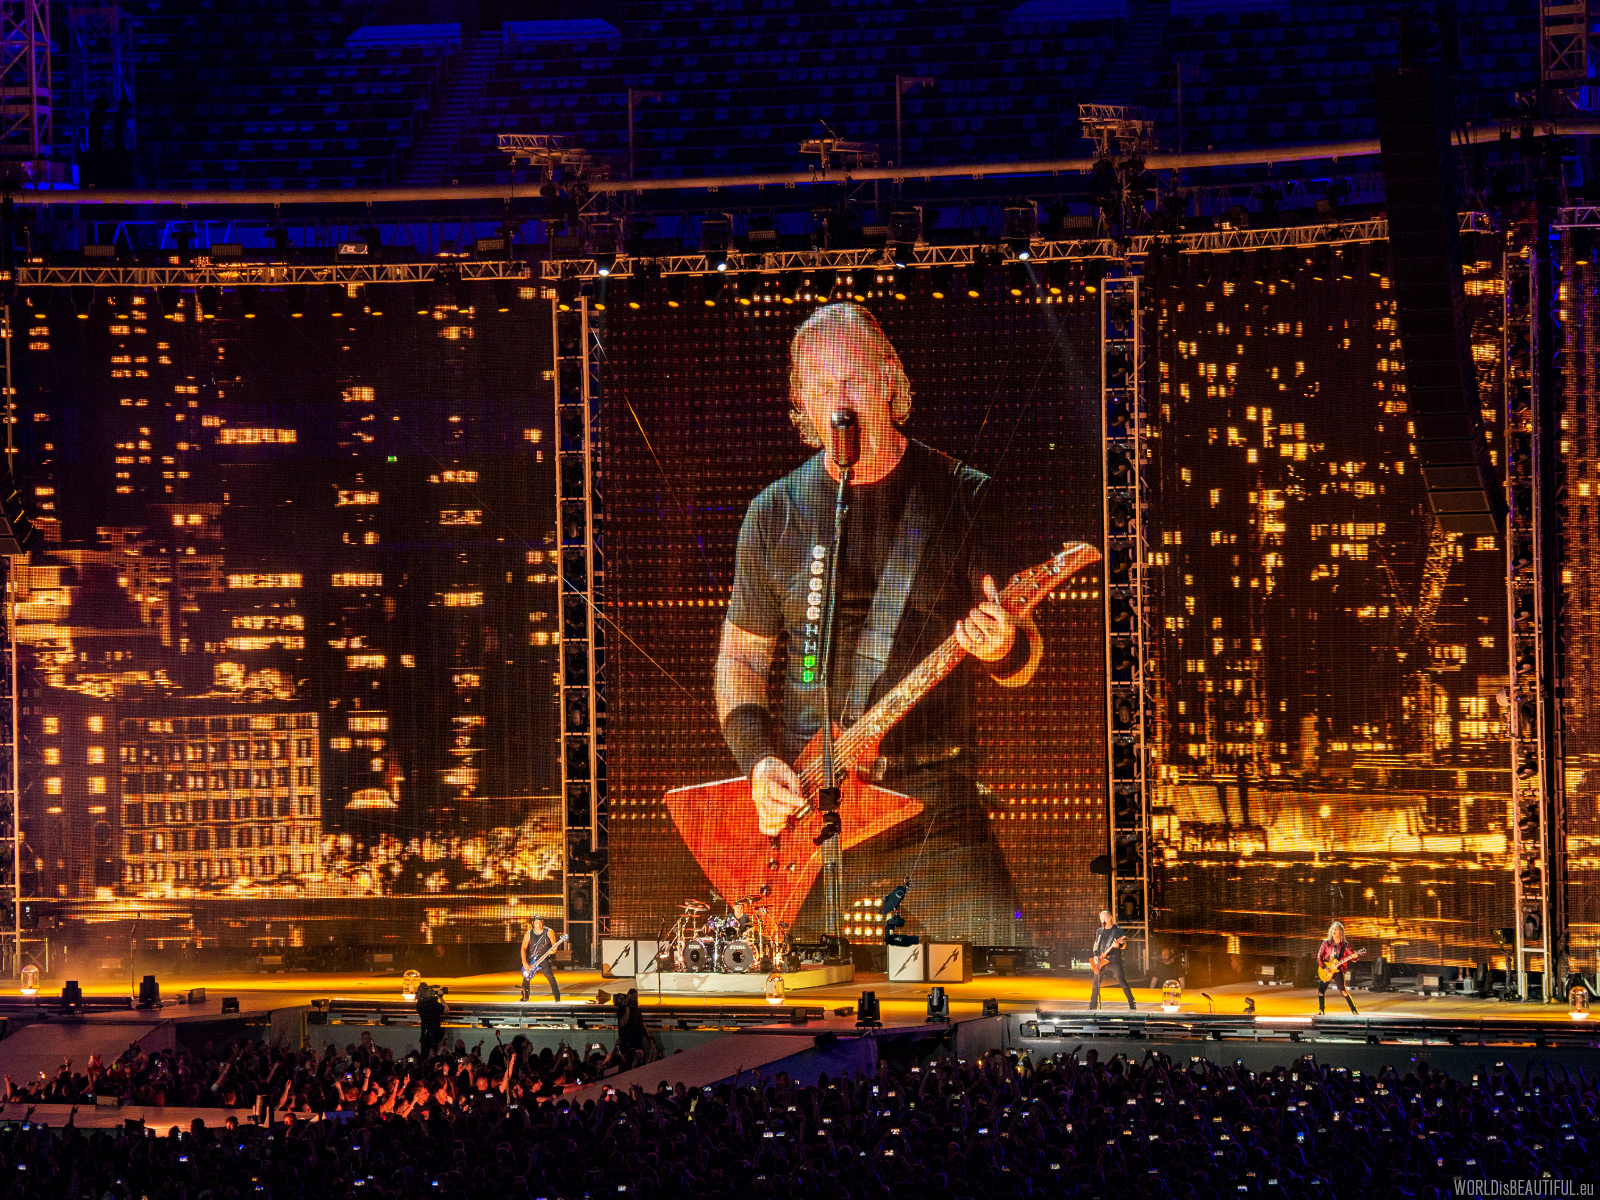 Concert Metallica